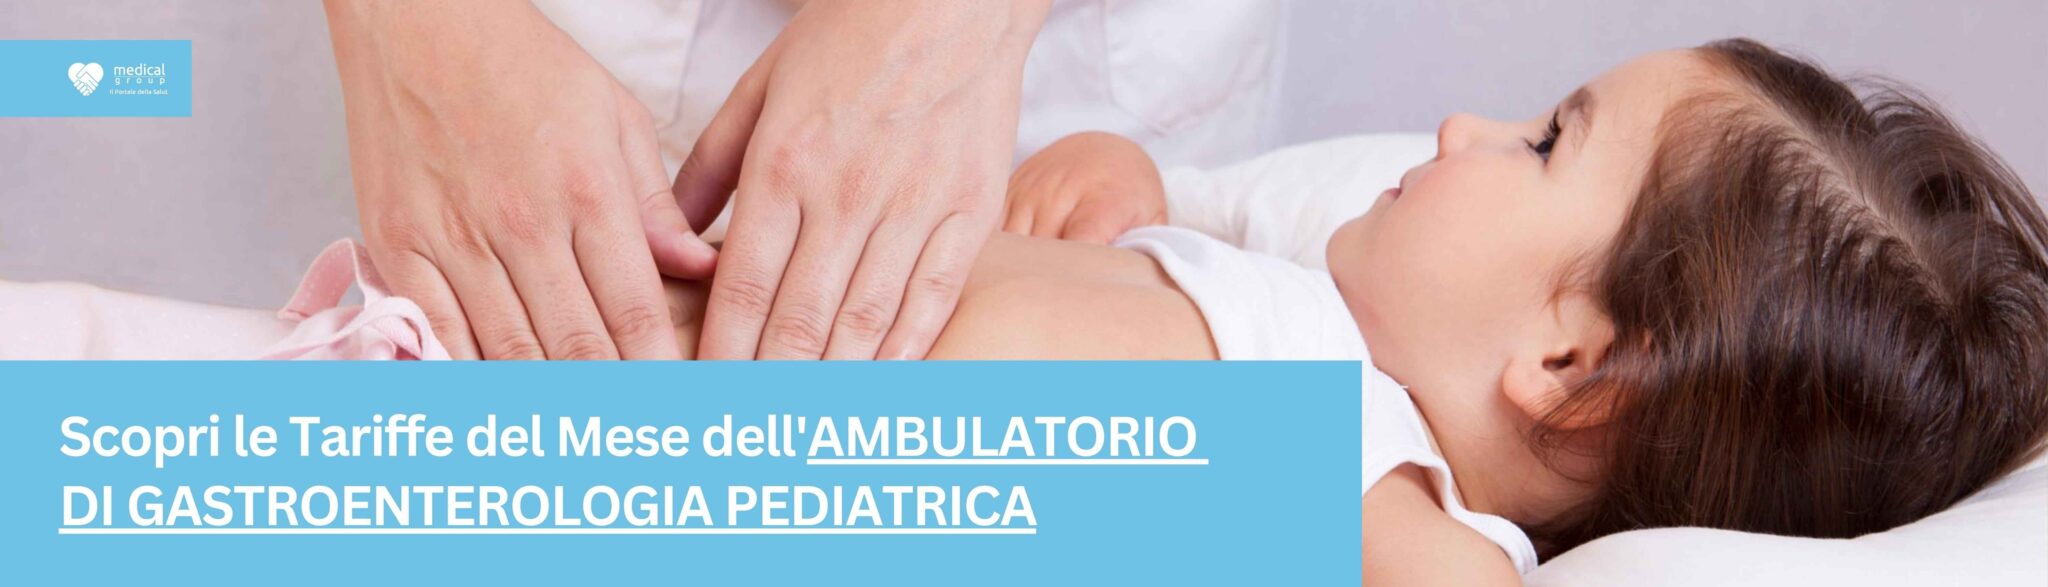 Tariffe del Mese Poliambulatorio Gastroenterologico Pediatrica F-Medical Frosinone_4_11zon